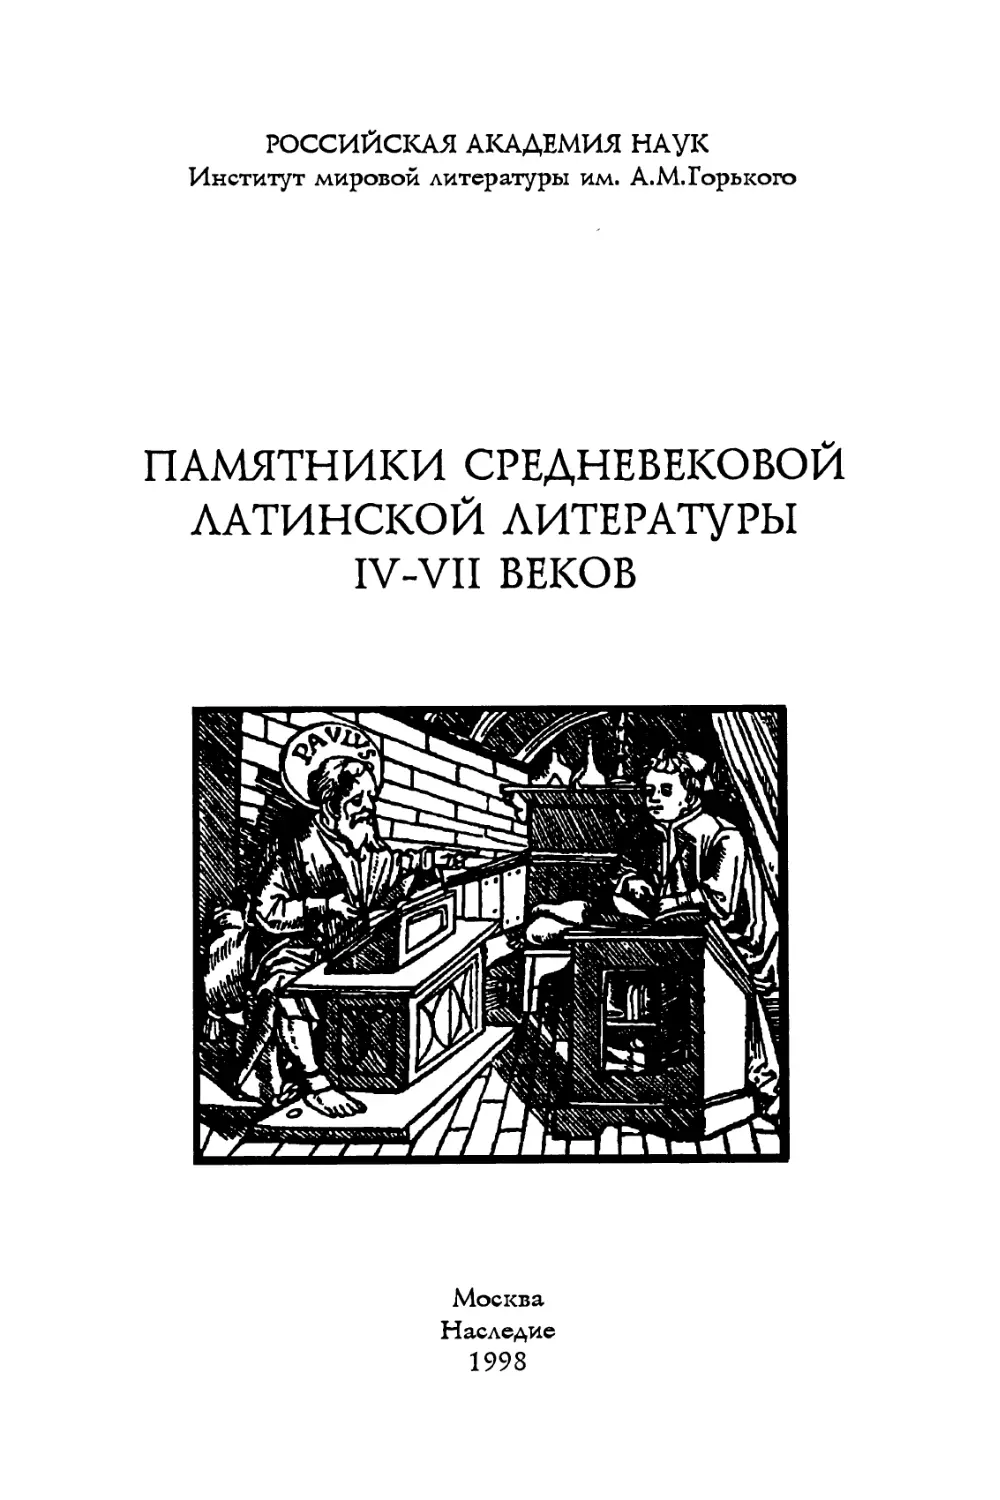 Памятники средневековой латинской литературы IV-VII веков - 1998